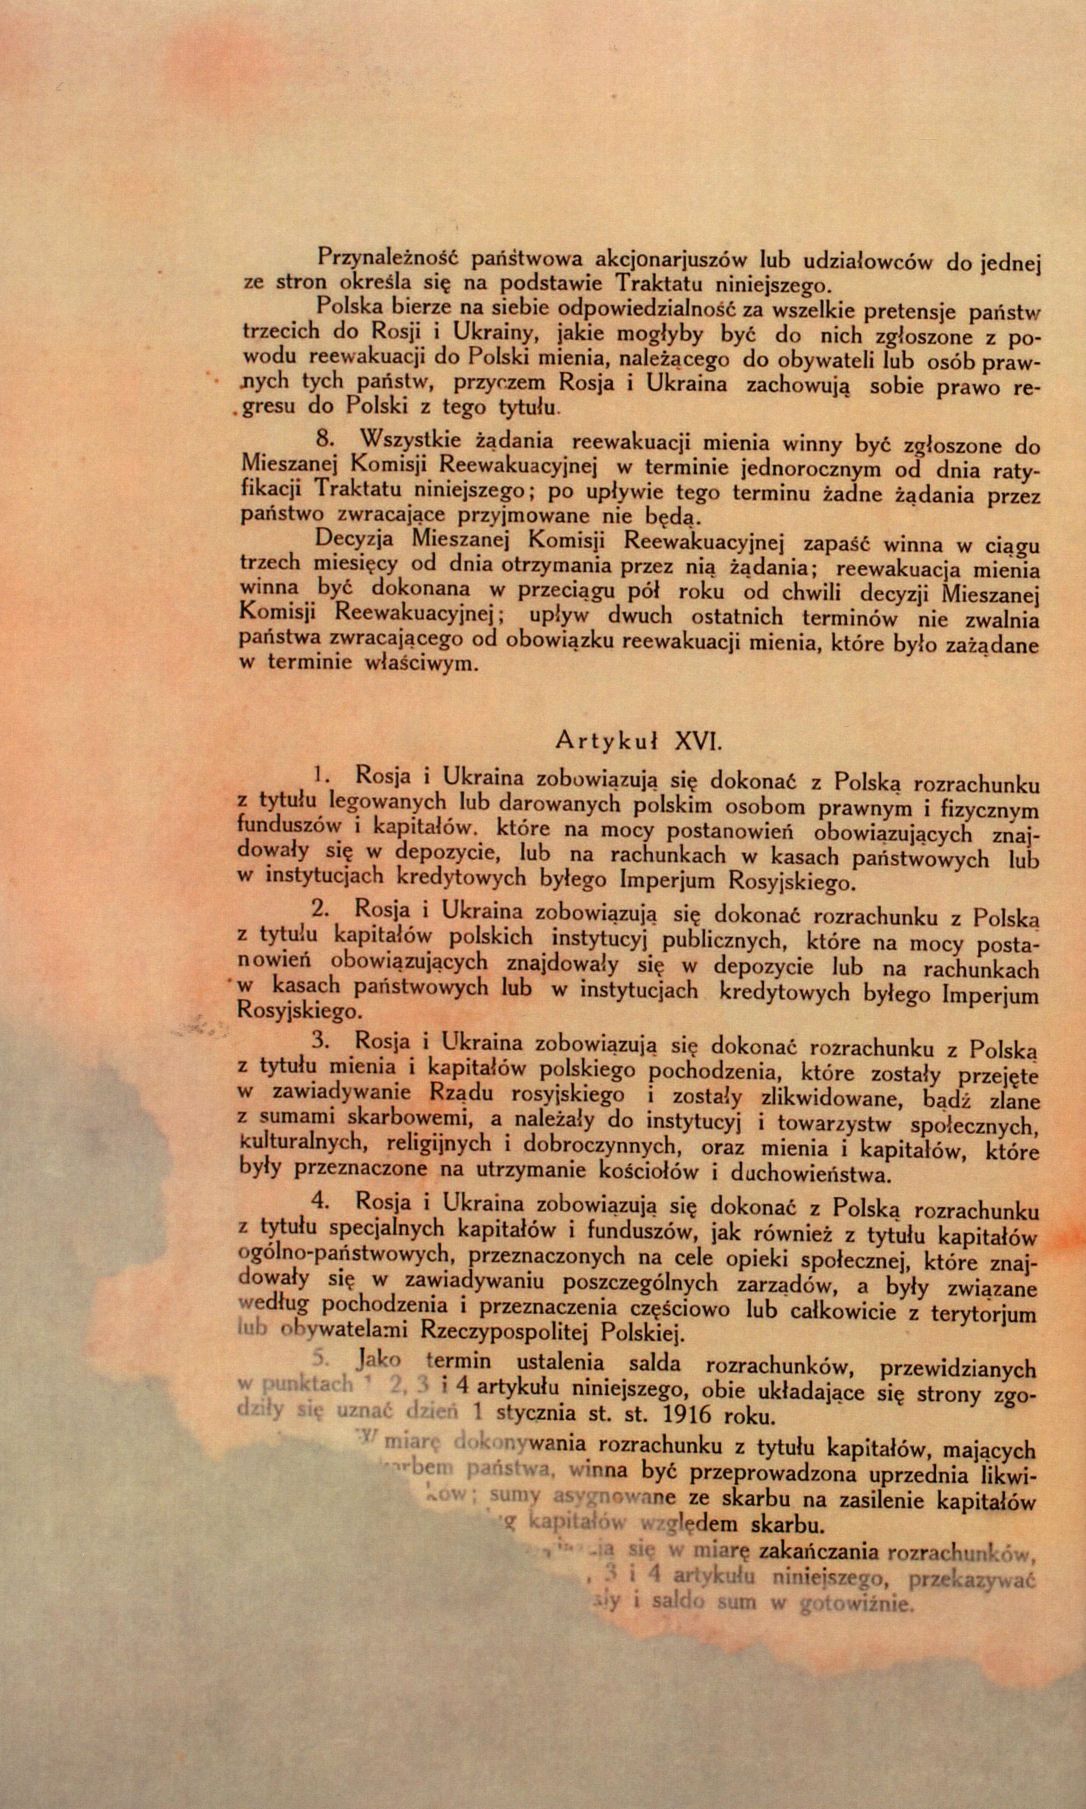 Traktat Pokoju między Polską a Rosją i Ukrainą podpisany w Rydze dnia 18 marca 1921 roku, s. 18, MSZ, sygn. 6739.